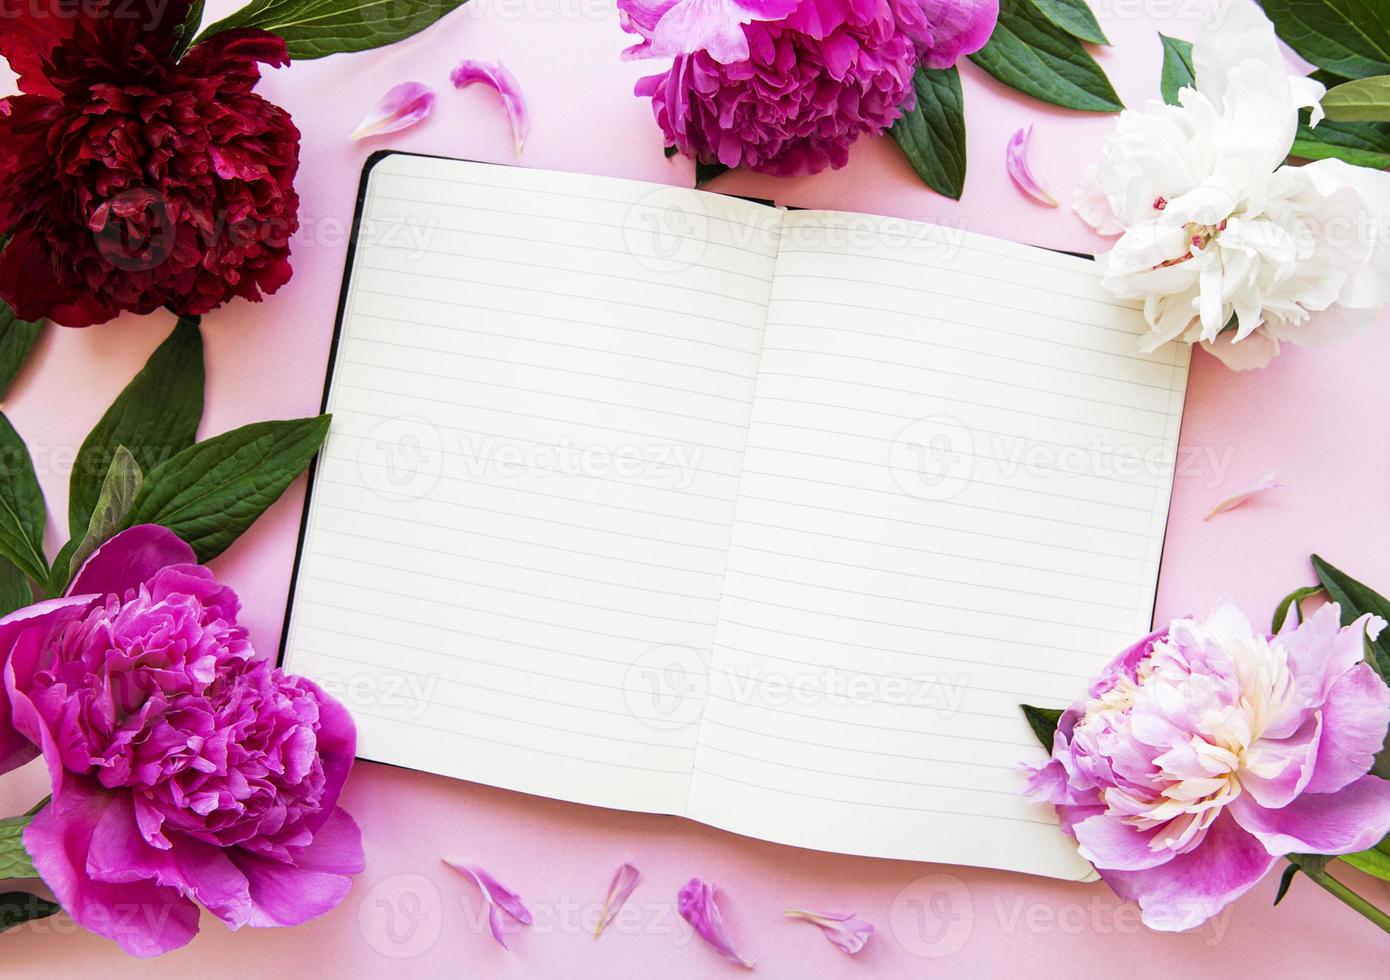 peony bloemen en leeg notitieboekje foto